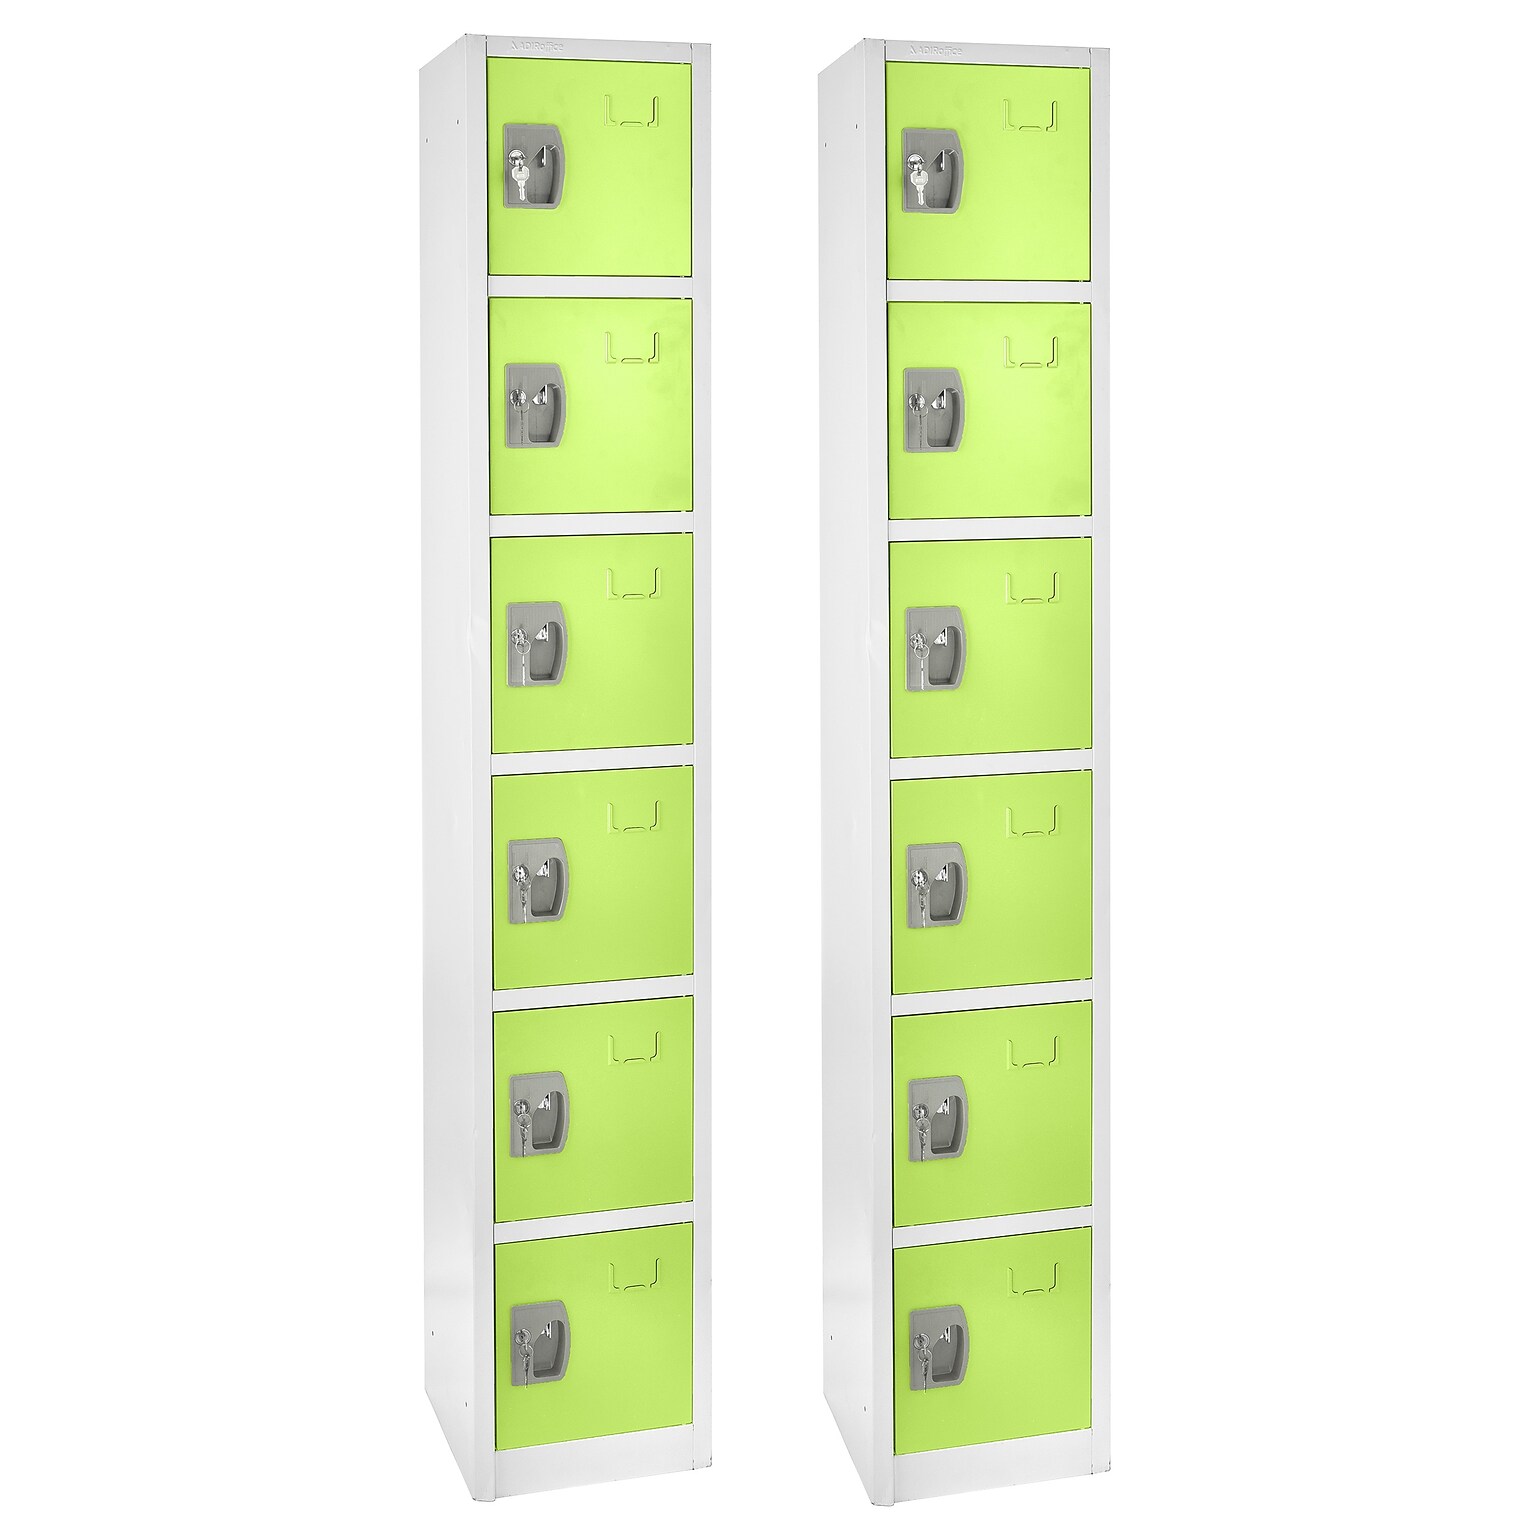 AdirOffice 72 6-Tier Key Lock Green Steel Storage Locker, 2/Pack (629-206-GRN-2PK)